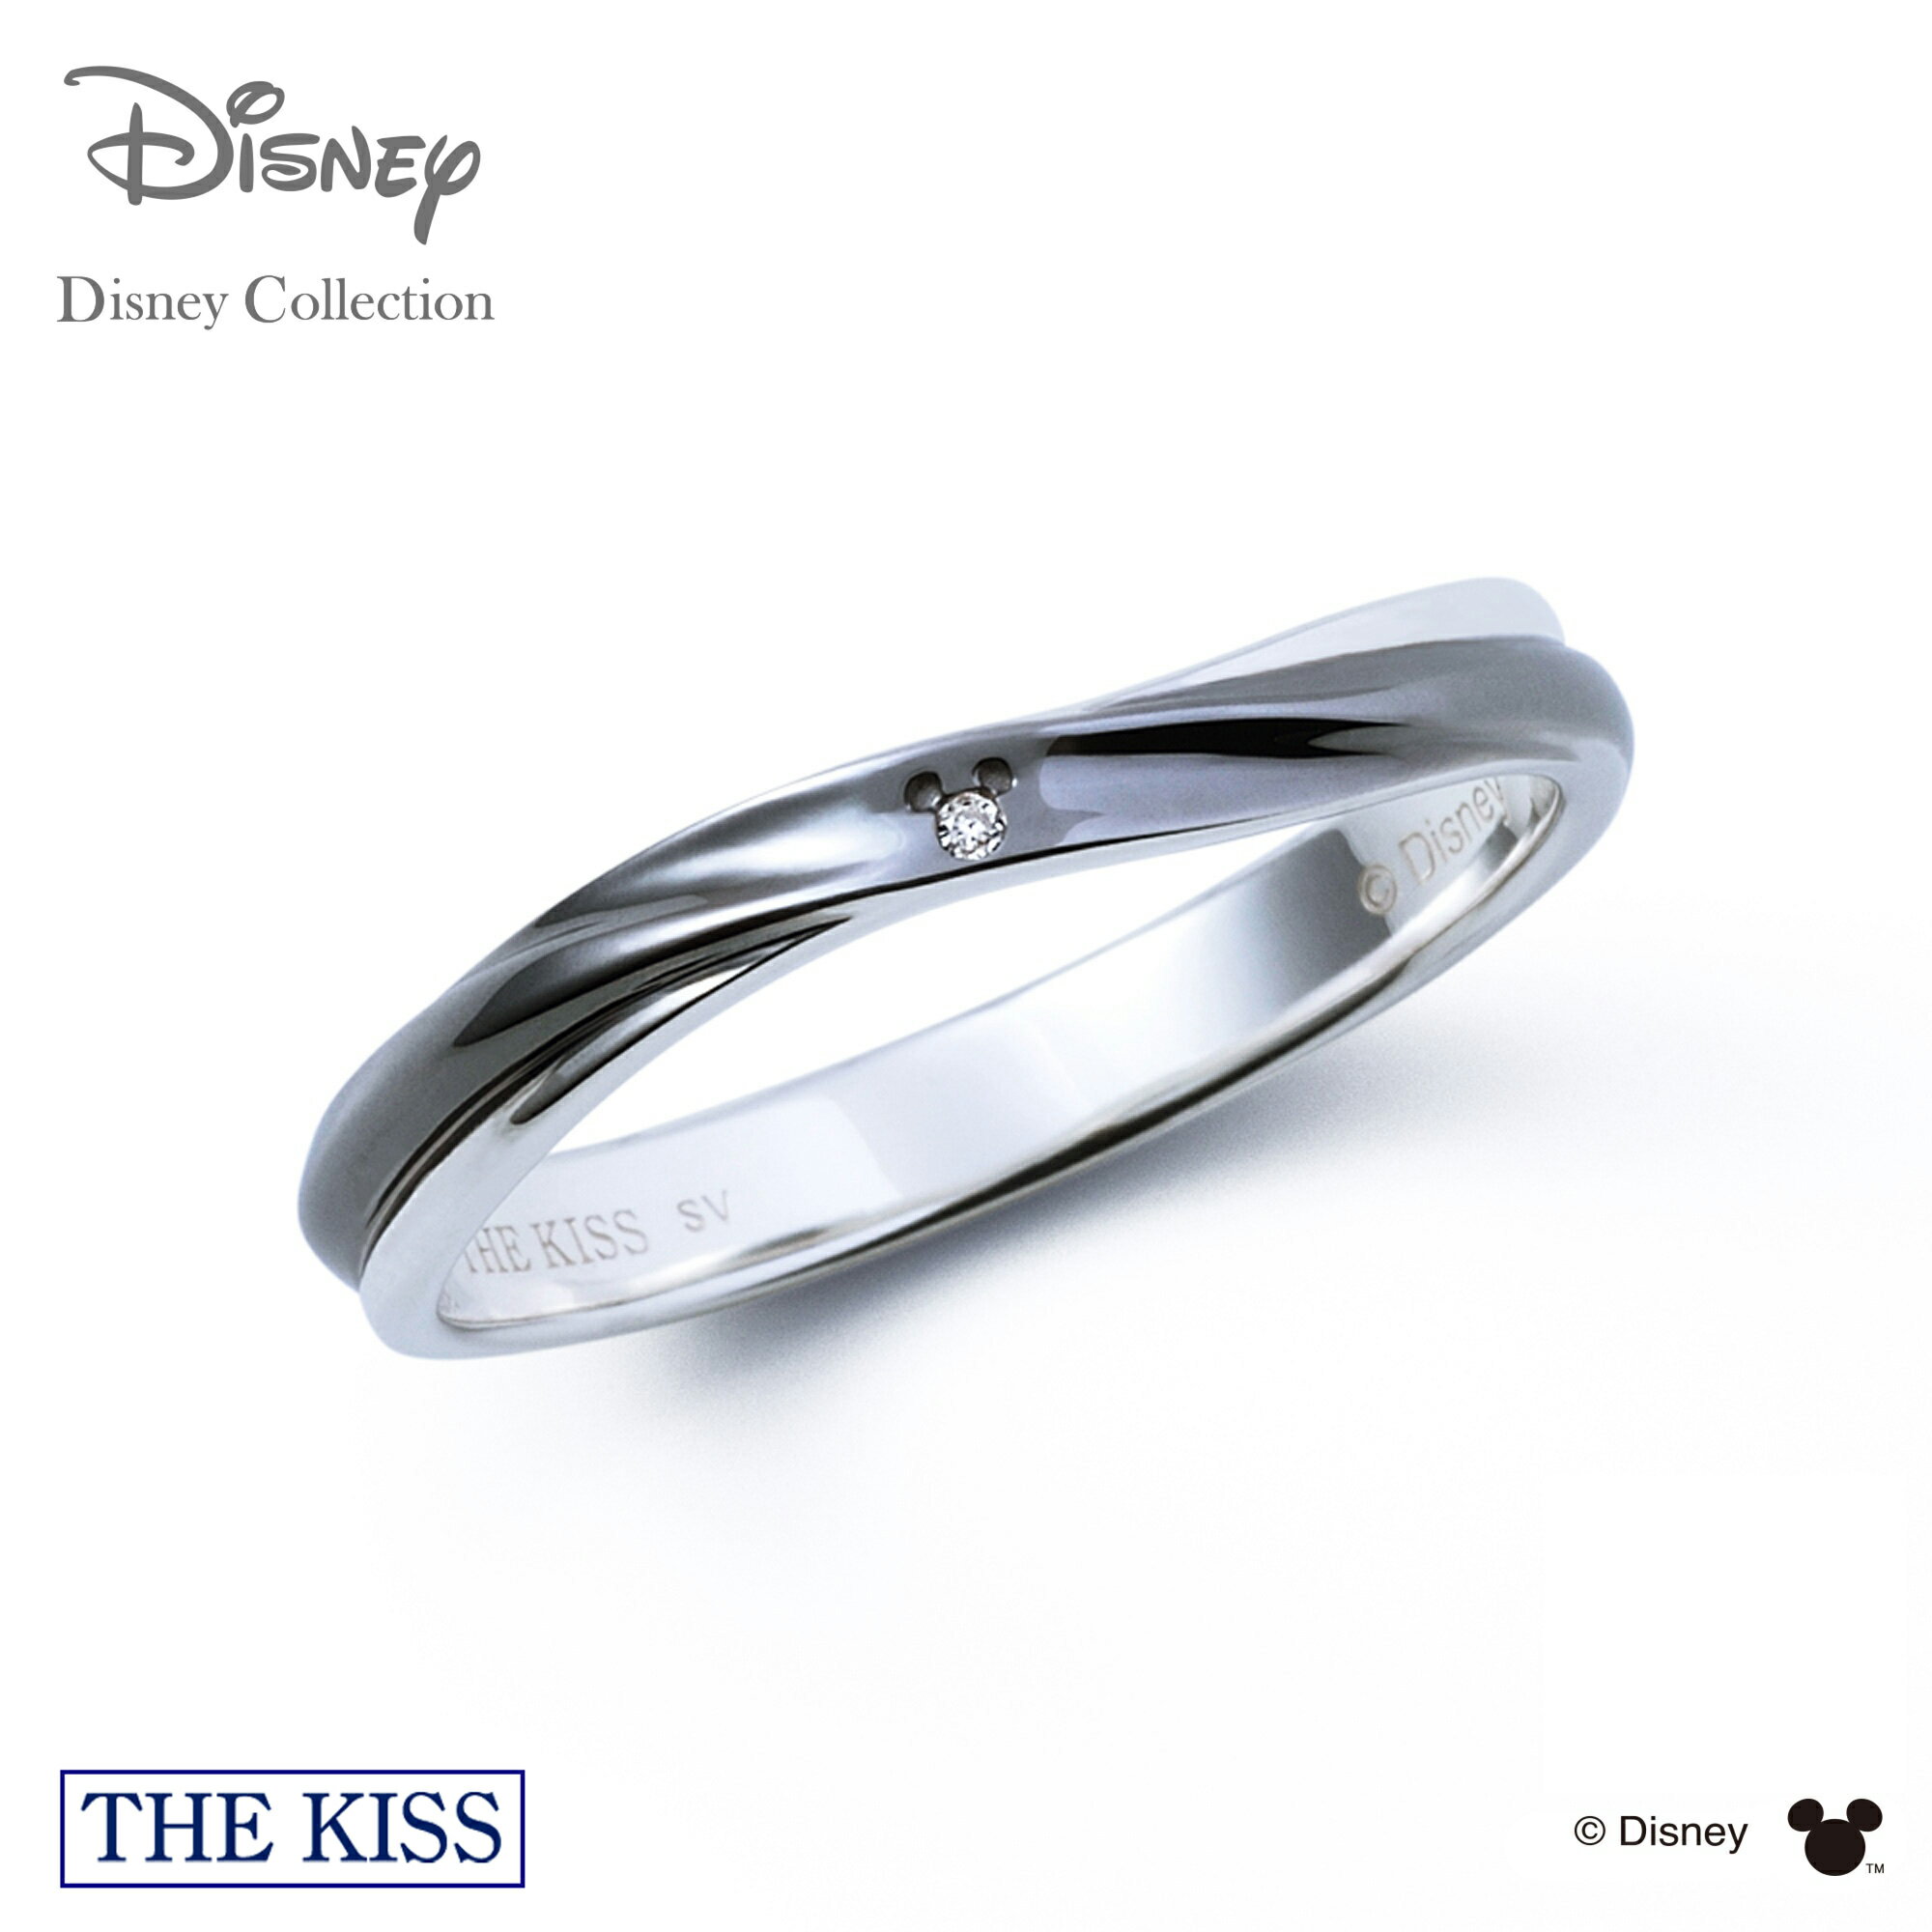 ディズニー ミッキー リング 指輪 隠れミッキー シルバー ダイヤモンド リング メンズ 男性 THE KISS ザ・キッス アクセサリー ジュエリー 人気 ブランド 誕生日 記念日 プレゼント ギフト